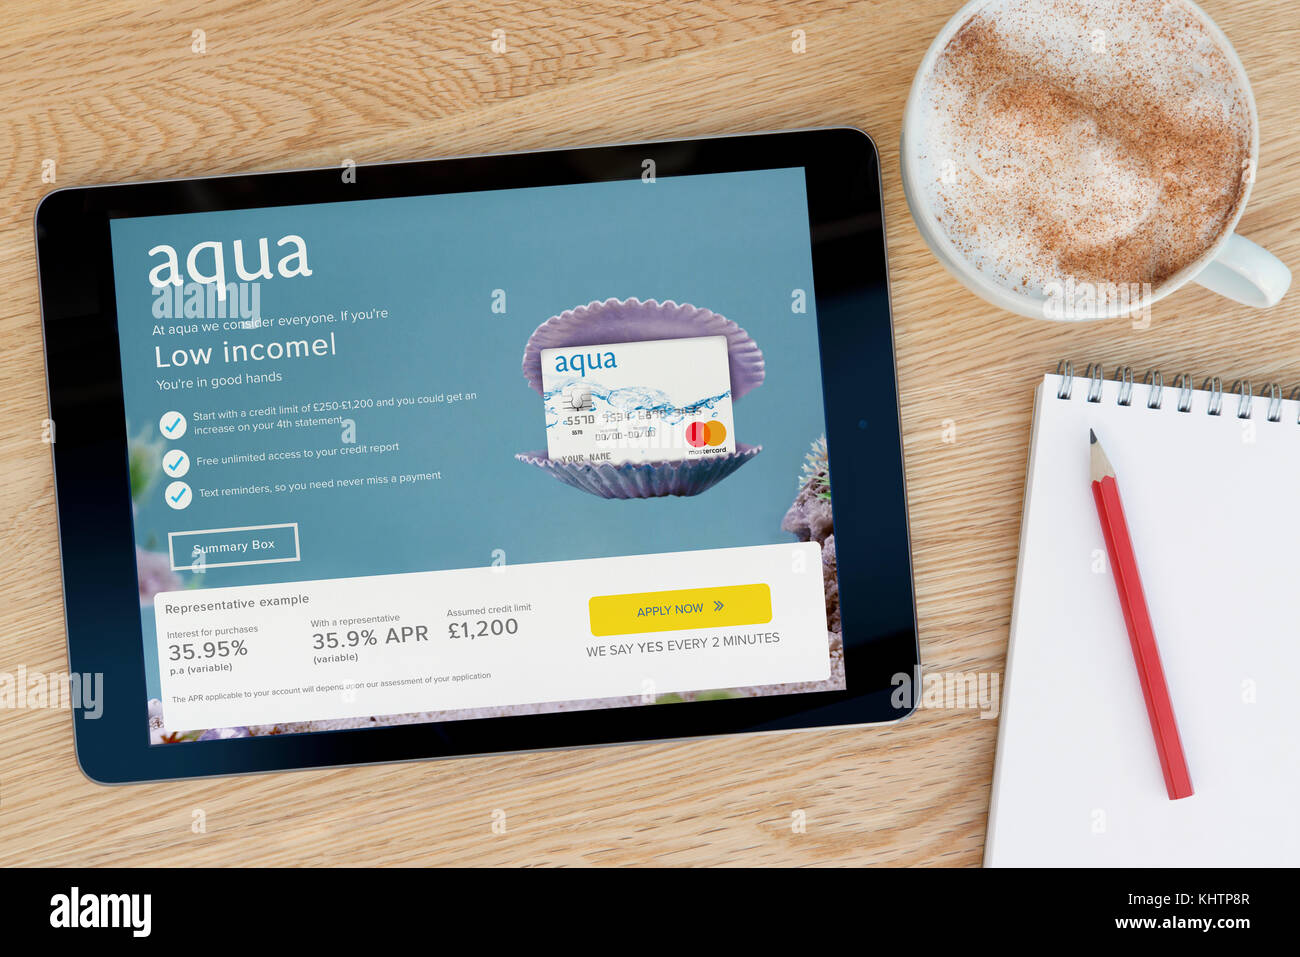 Le site web présente la carte Aqua sur un iPad tablet device qui repose sur une table en bois à côté d'un bloc-notes et un crayon et une tasse de café (rédaction uniquement) Banque D'Images